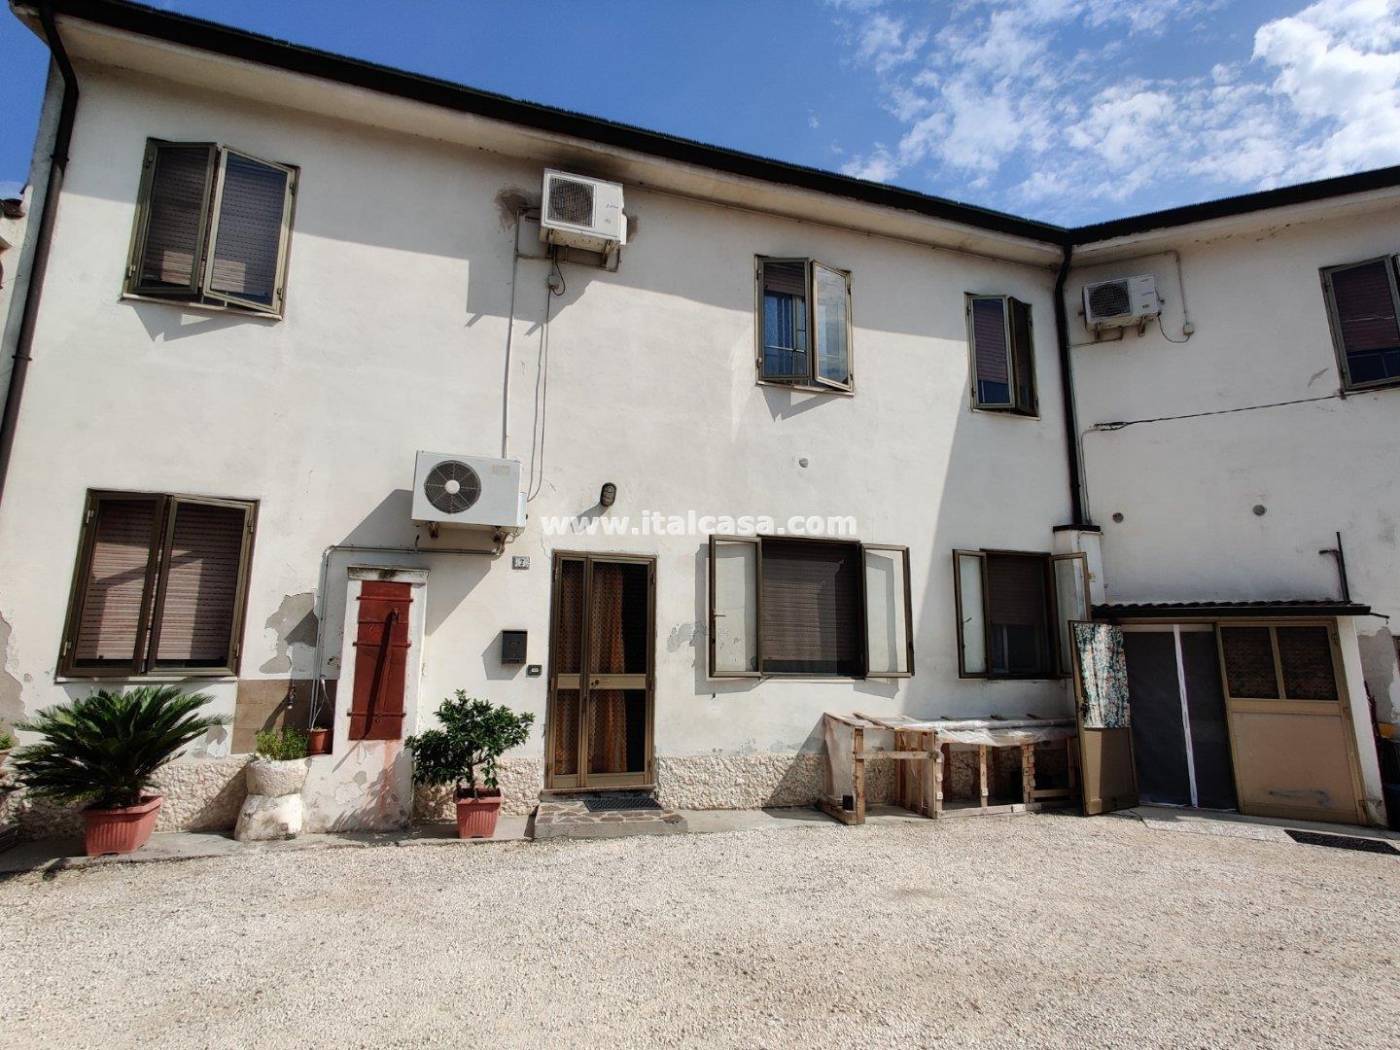 villa bifamiliare in vendita a borgoforte vicolo san cataldo